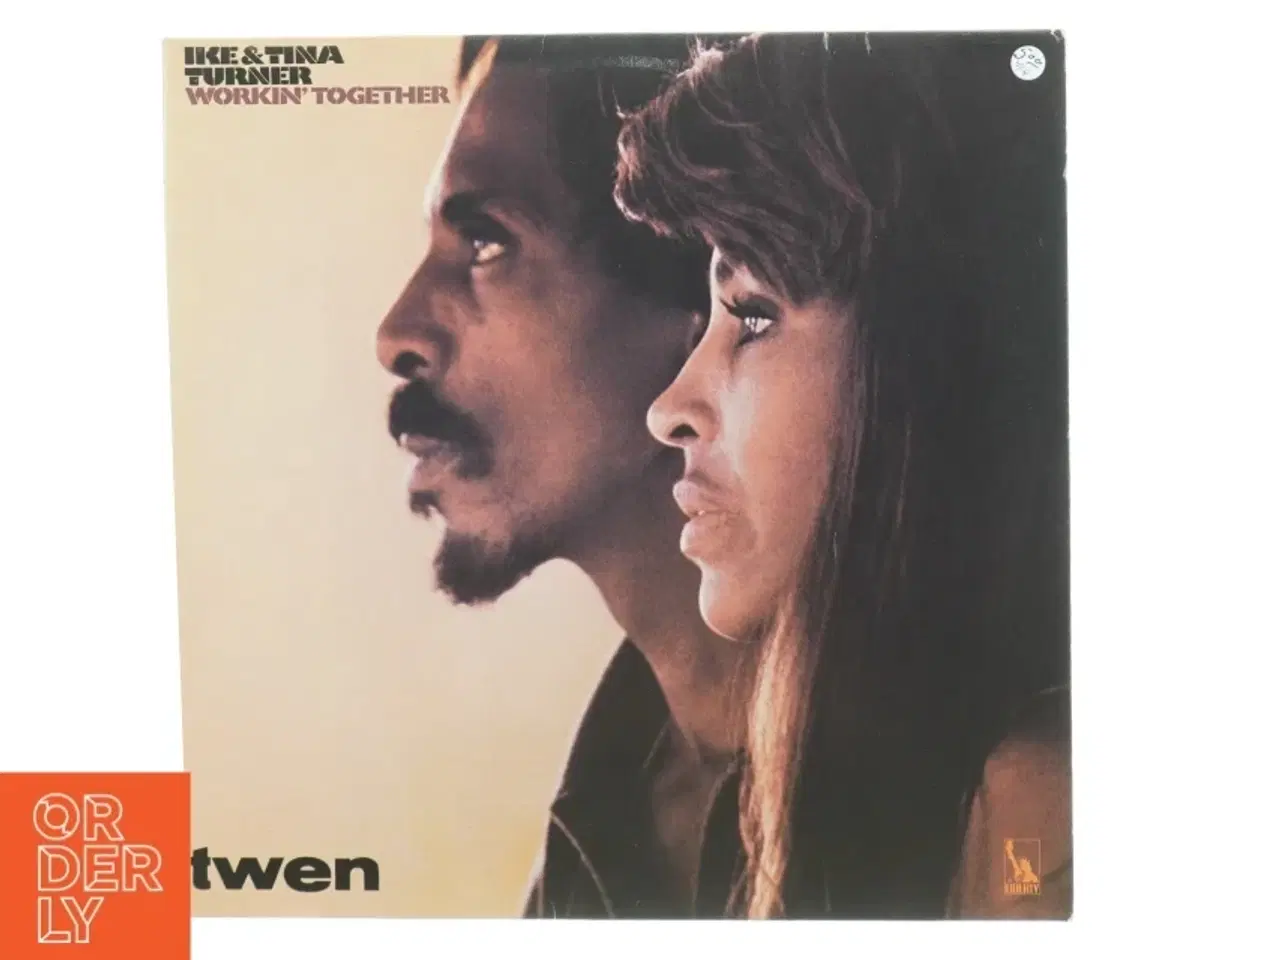 Billede 1 - Ike & Tina Turner Vinylplade fra Liberty Records (str. 31 x 31 cm)